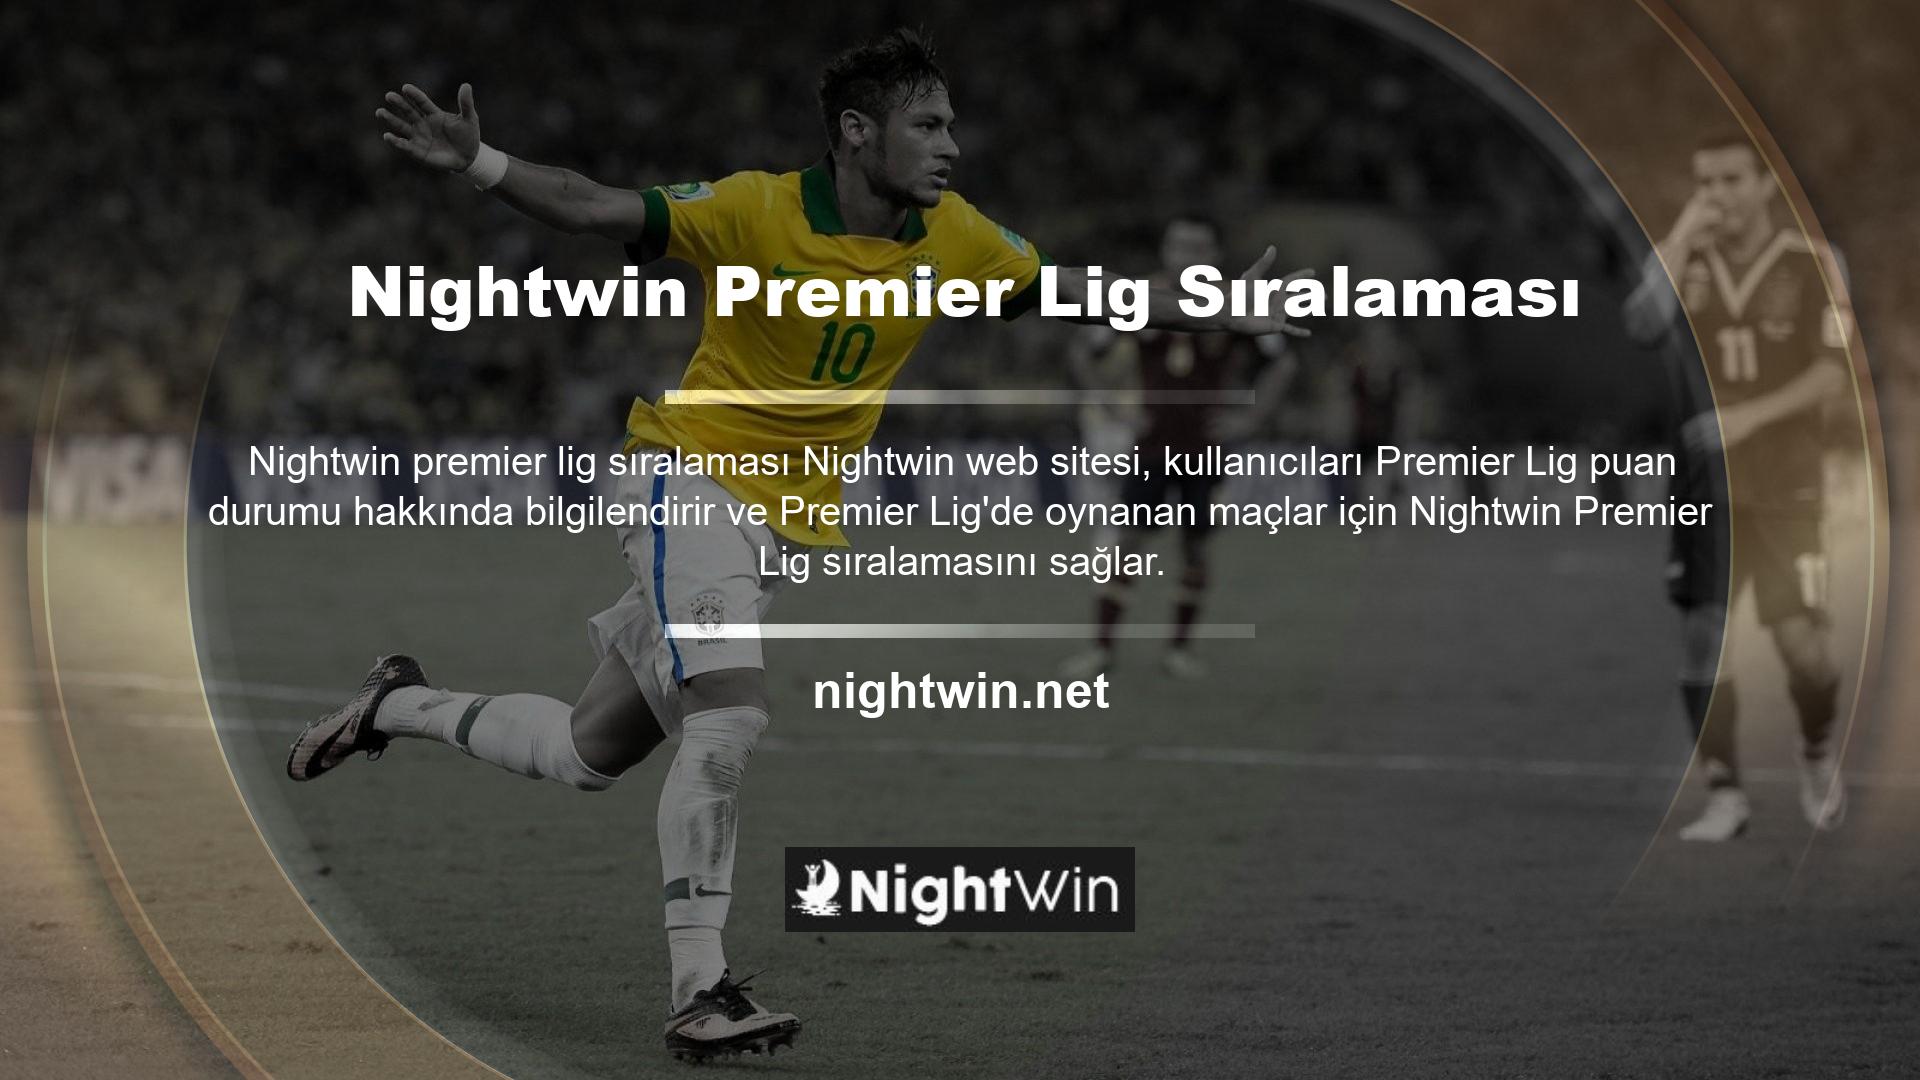 Futbol izlemekten keyif alıyorlar ve Nightwin sitesinden canlı maçları takip edebiliyorlar